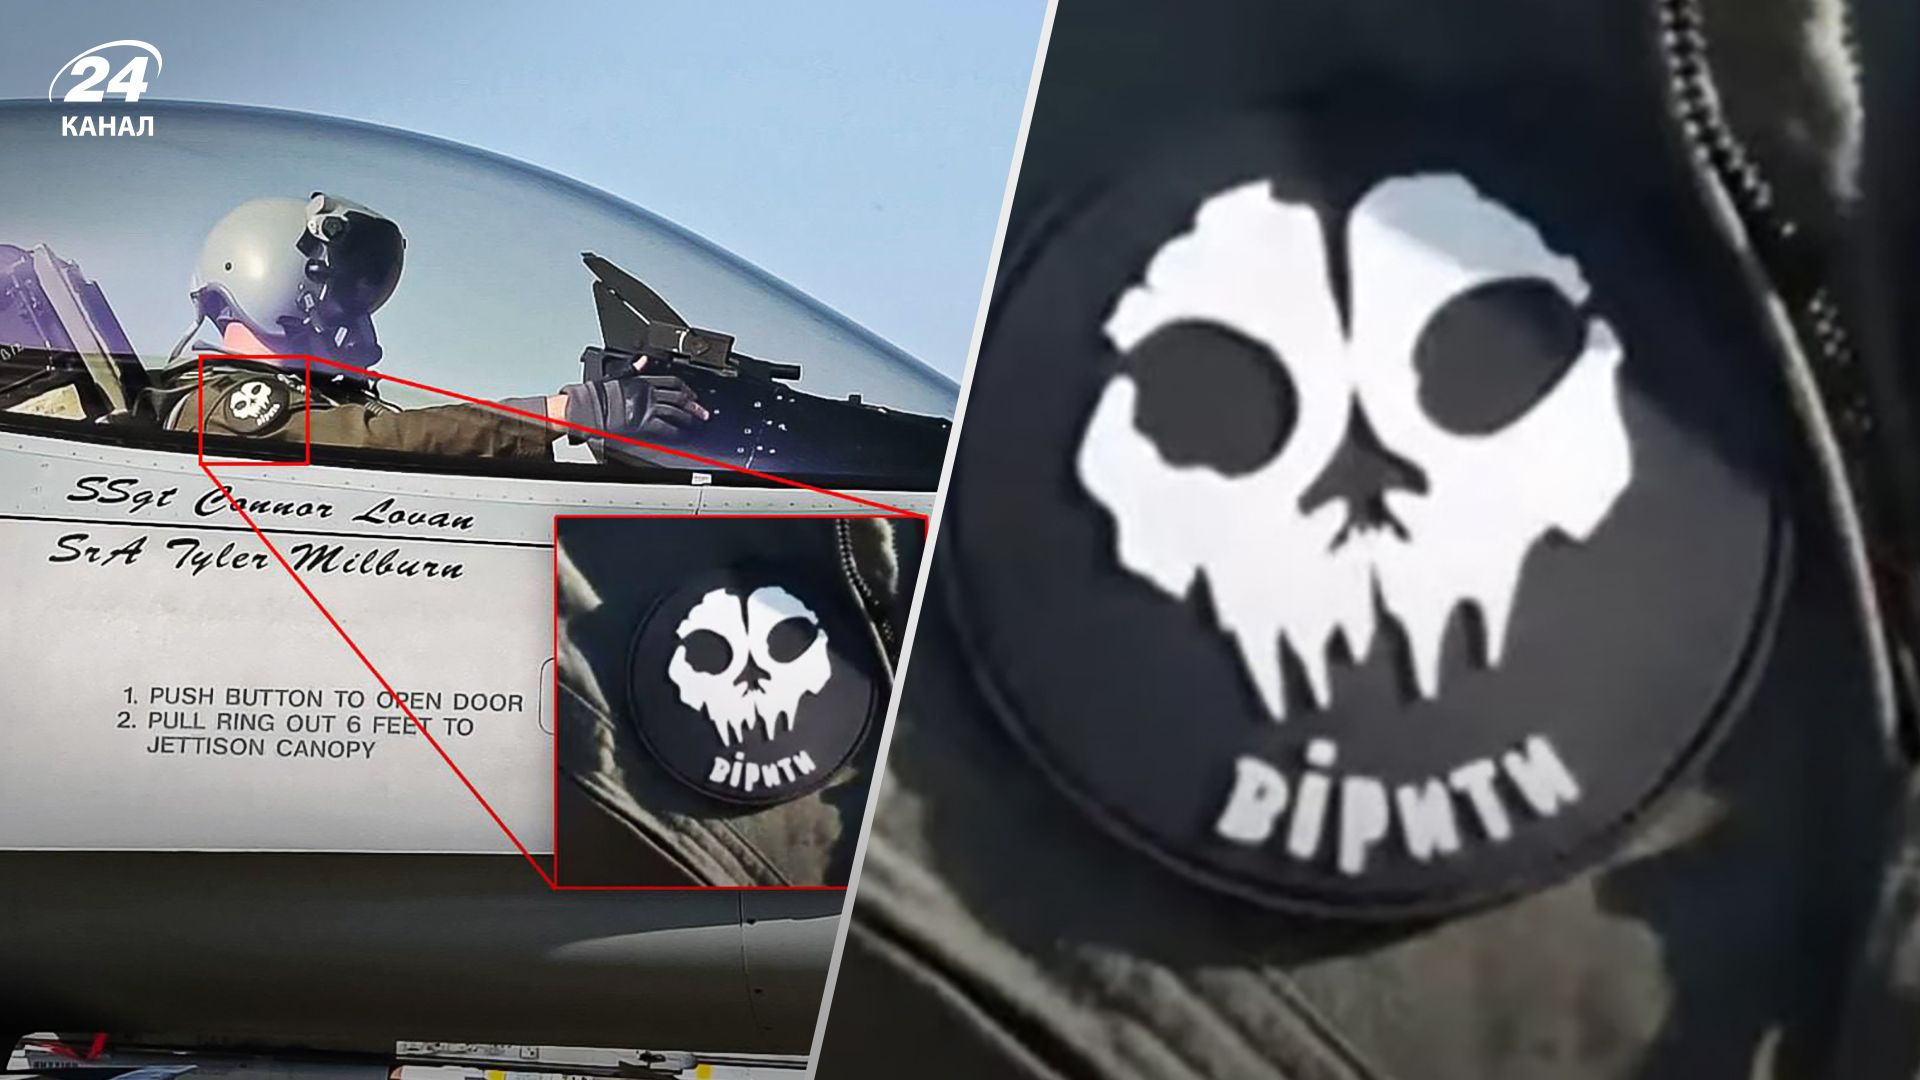 F-16 для України - у мережі показали фото привида Києва у кабіні літака